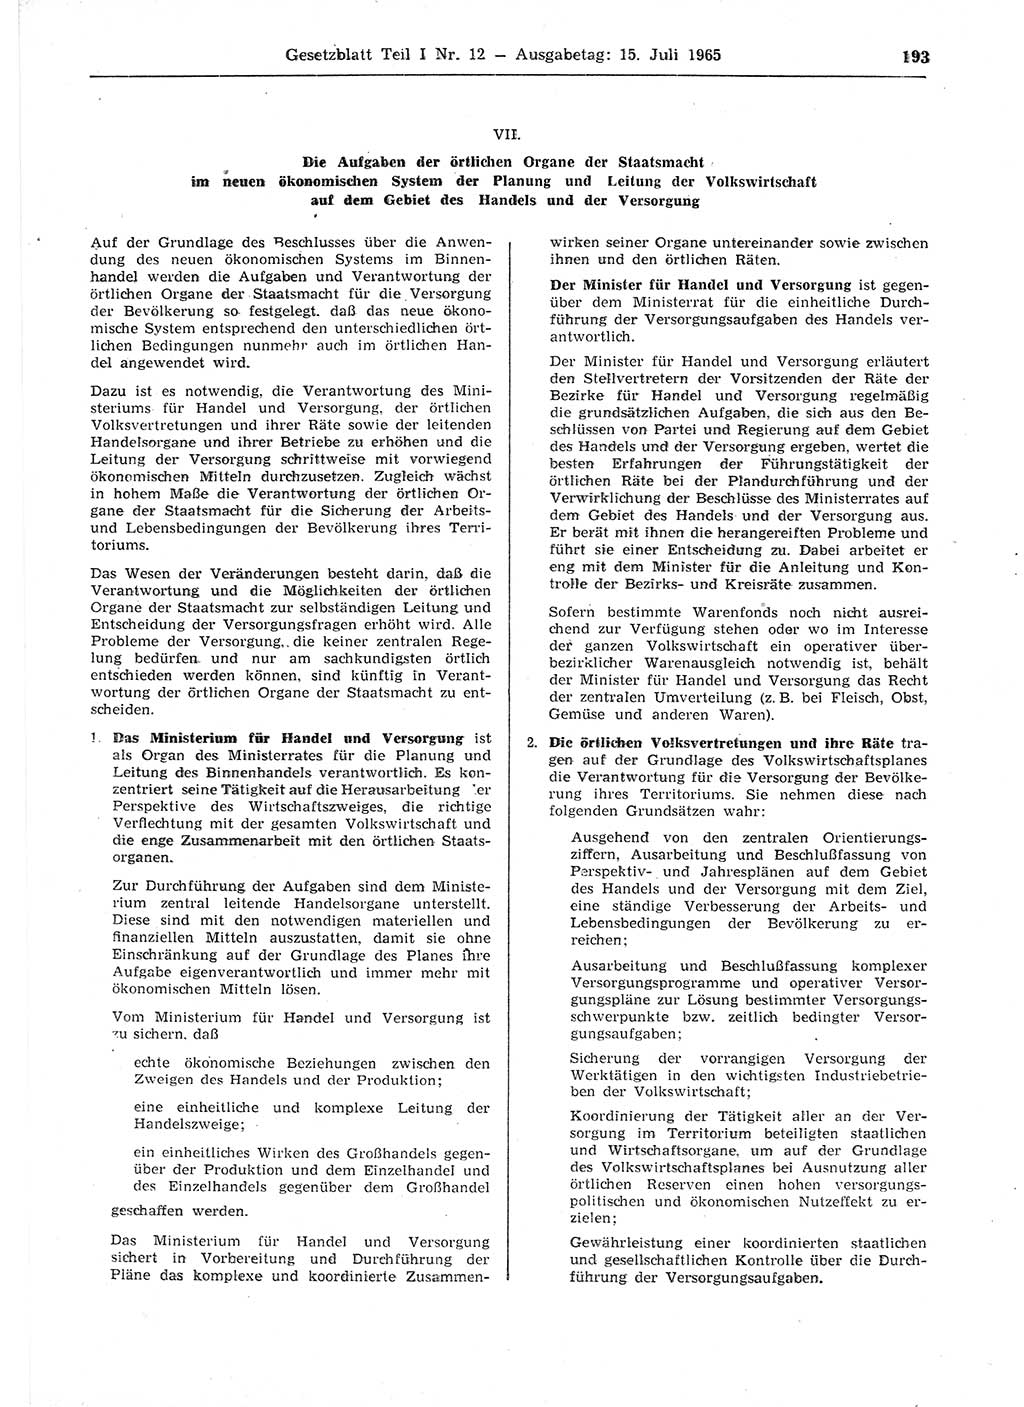 Gesetzblatt (GBl.) der Deutschen Demokratischen Republik (DDR) Teil Ⅰ 1965, Seite 193 (GBl. DDR Ⅰ 1965, S. 193)